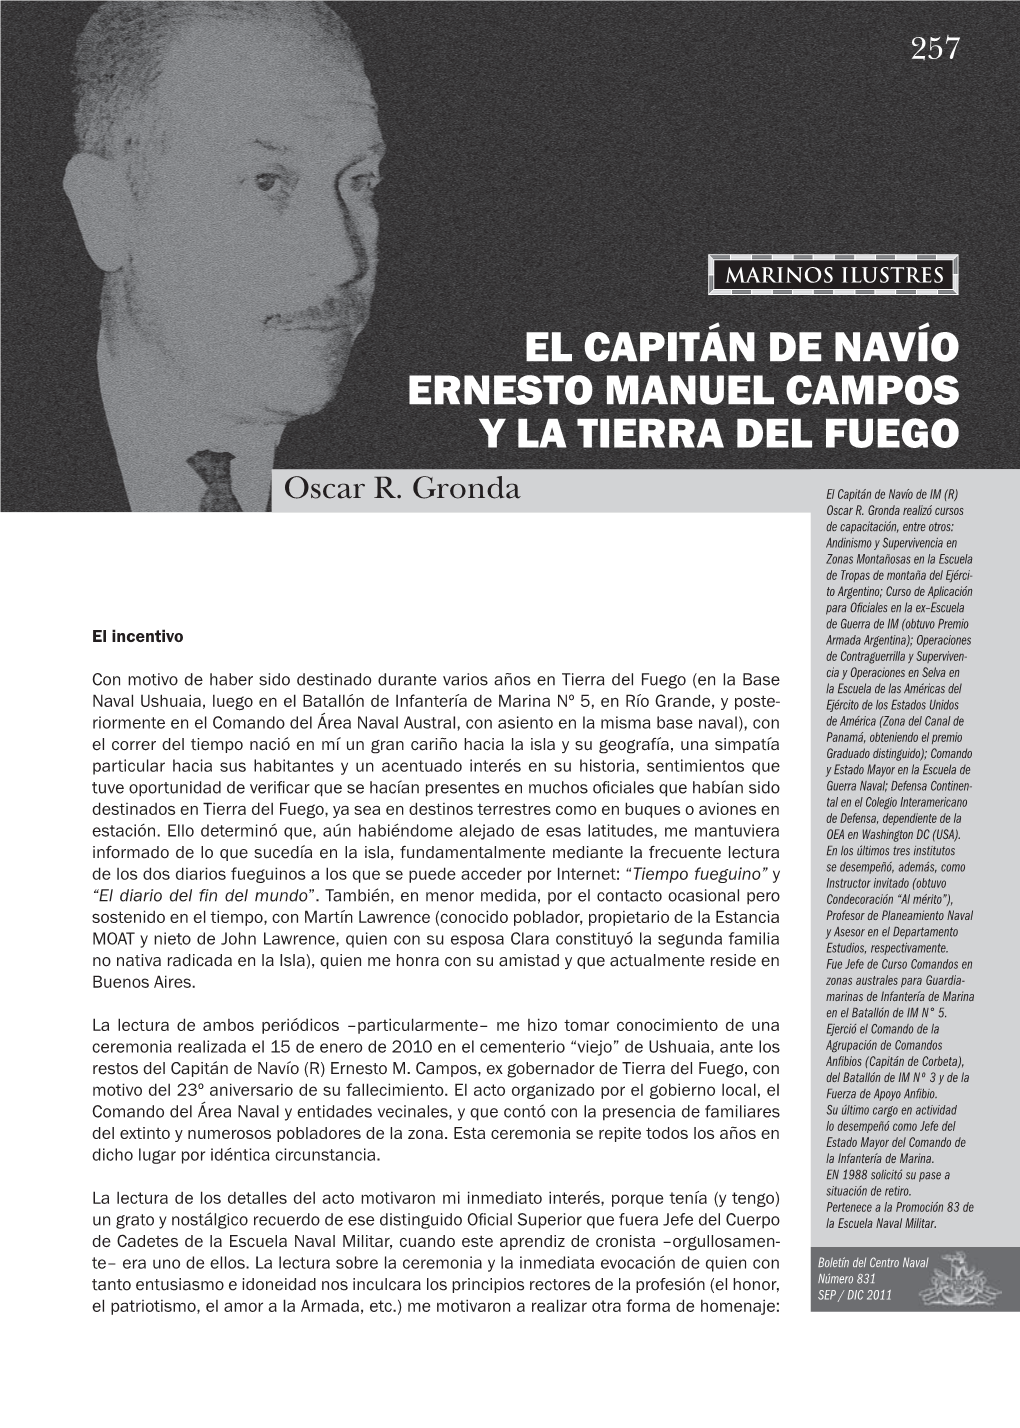 El Capitán De Navío Ernesto Manuel Campos Y La Tierra Del Fuego